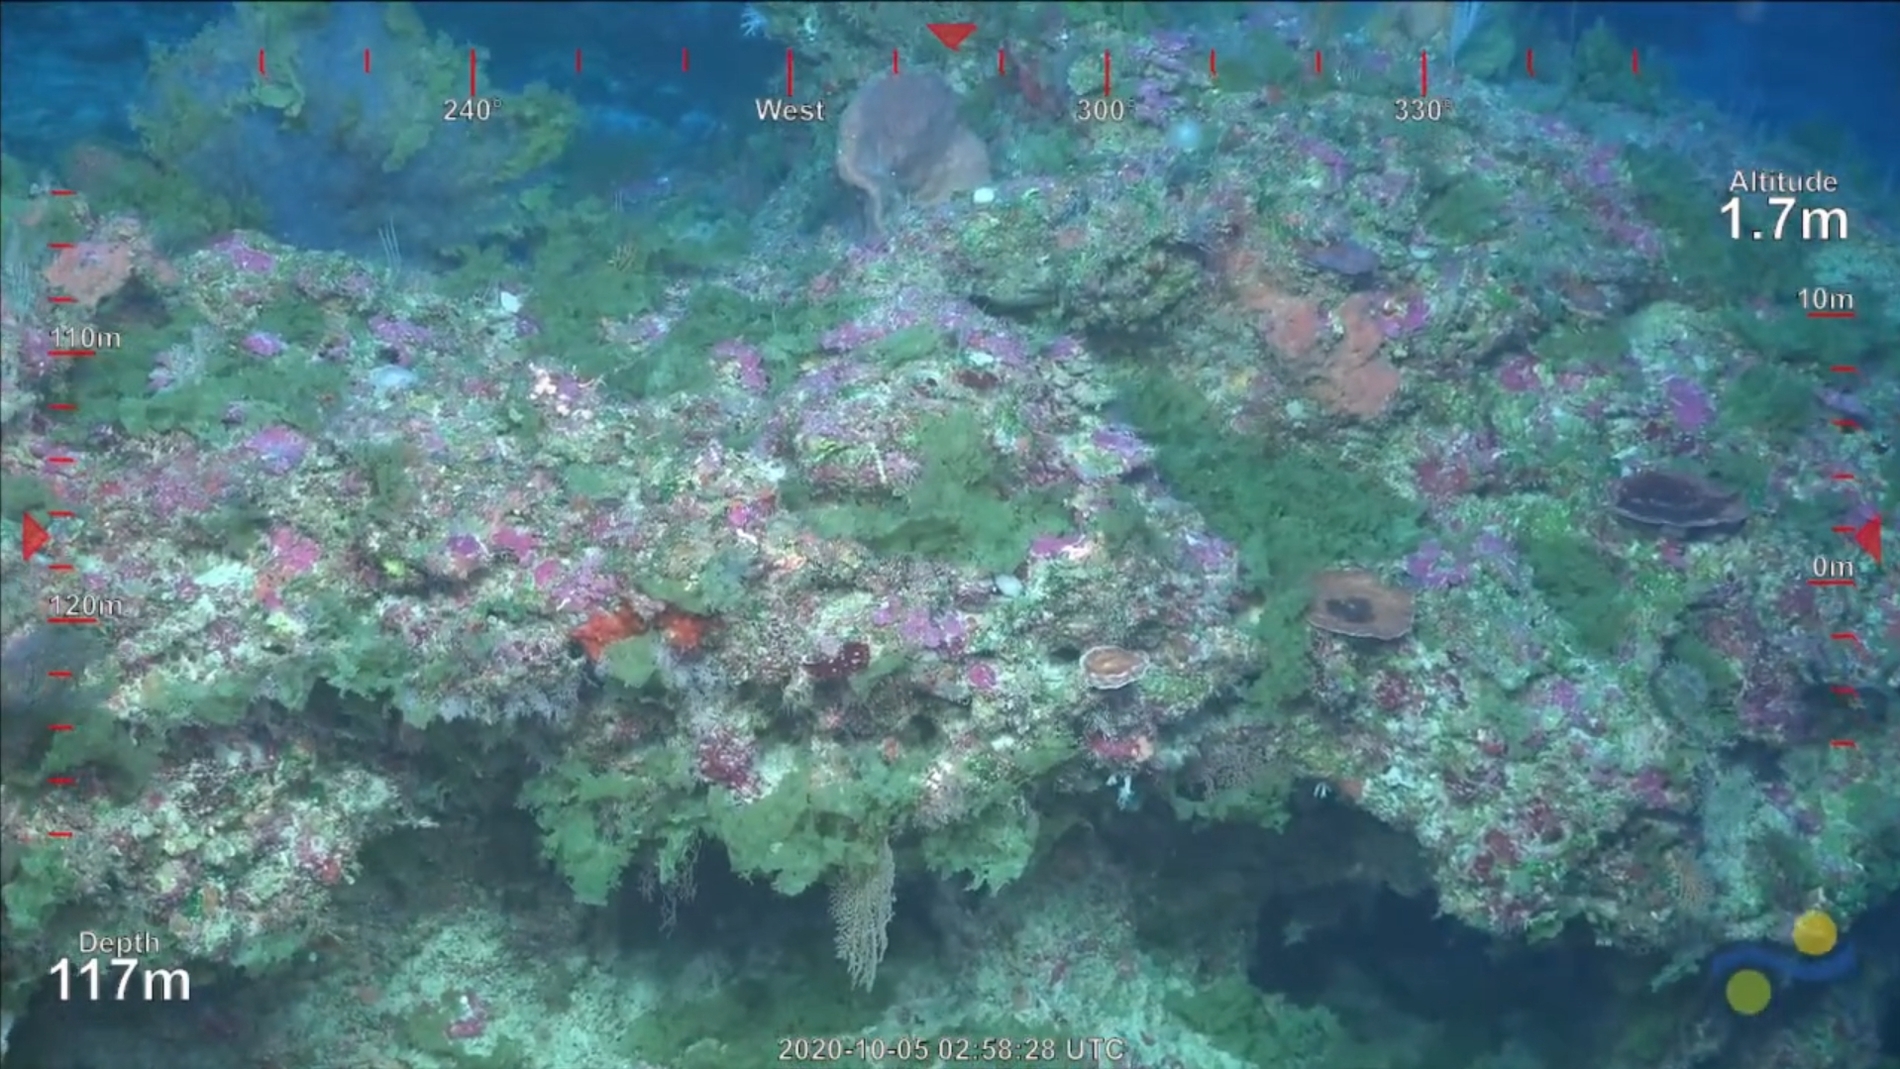 Descubierto un nuevo arrecife de coral en la Gran Barrera de Australia el primero en 120 anos